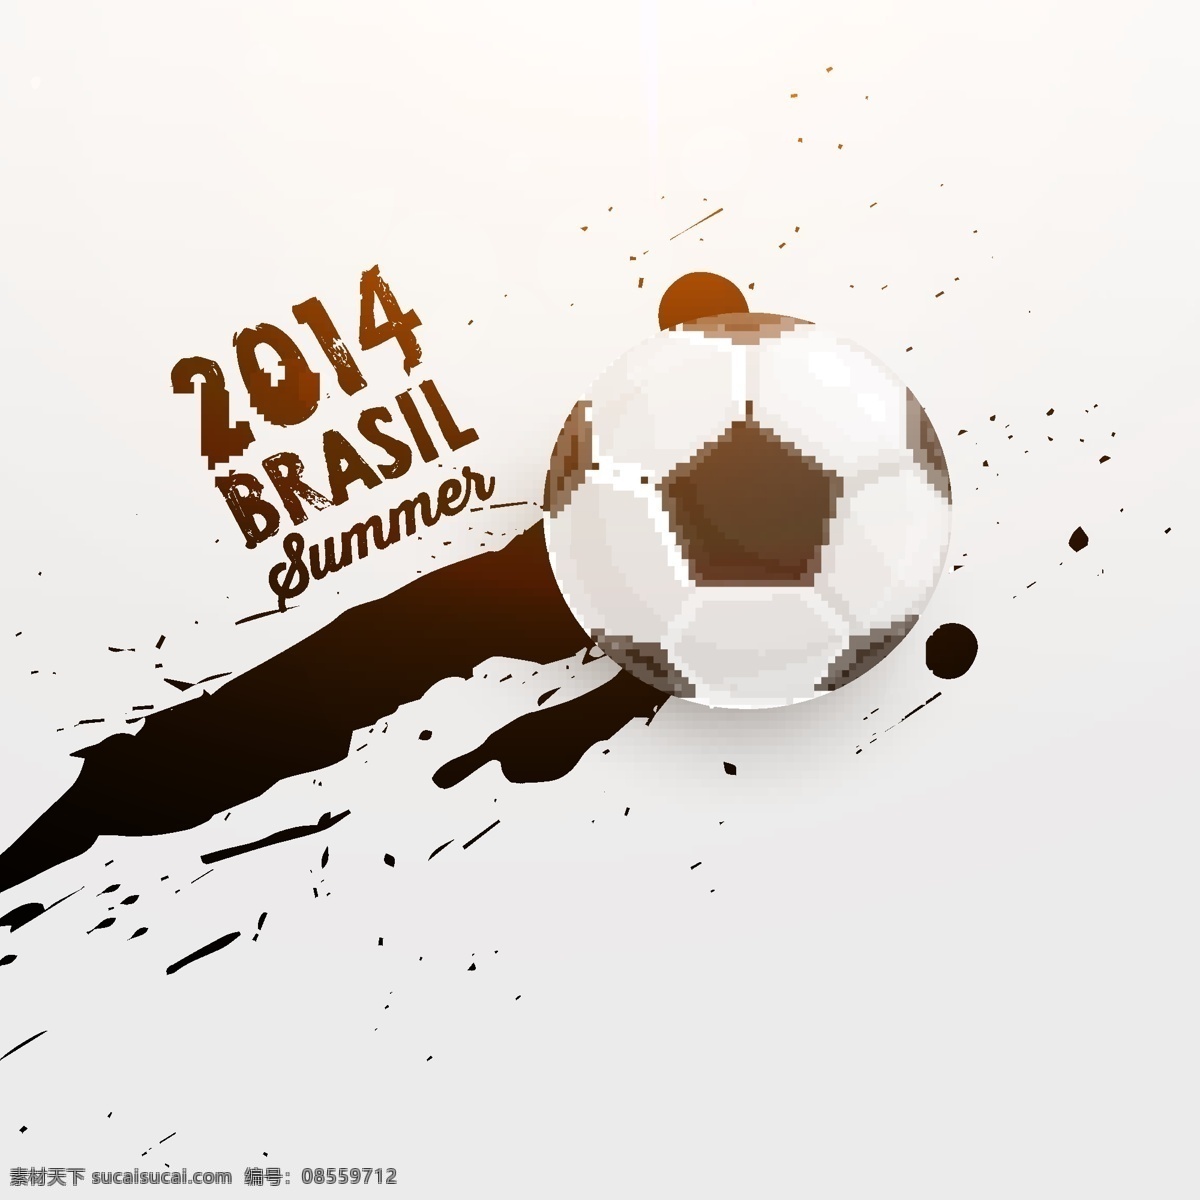 足球 墨迹 背景 海报 世界杯 体育运动 生活百科 矢量素材 白色